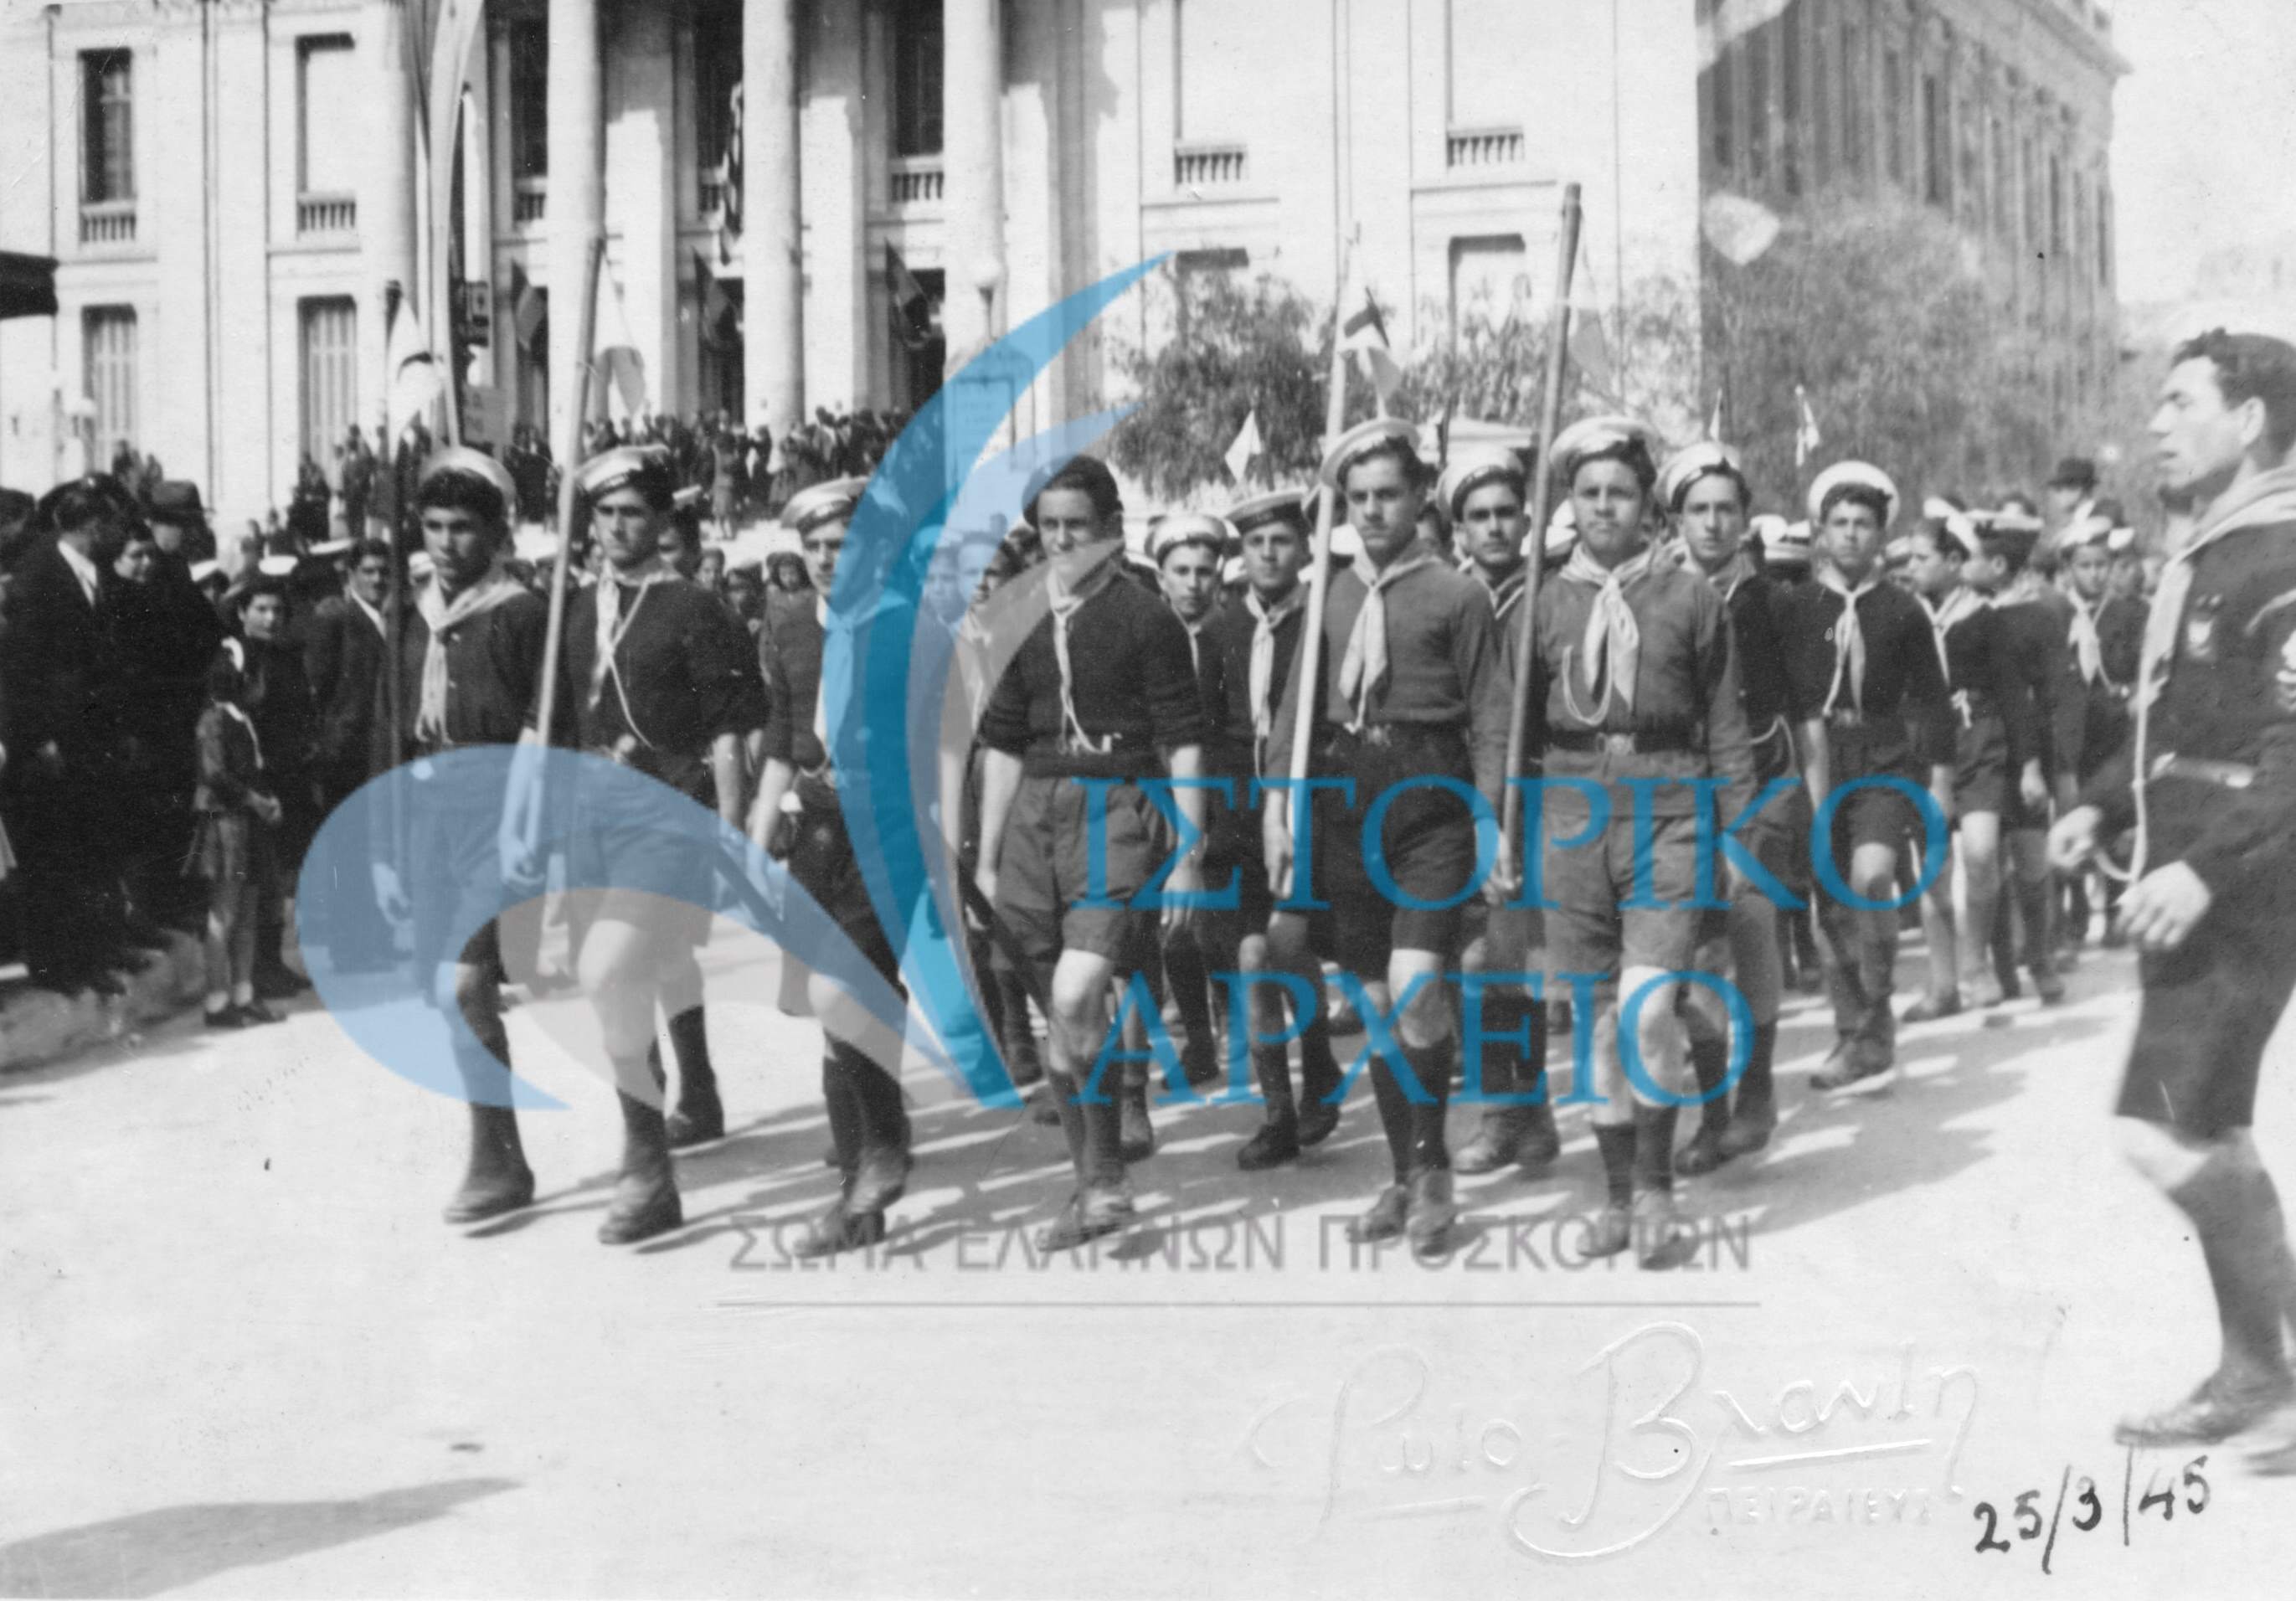 Η πρώτη εμφάνιση των Προσκόπων του Πειραιά μετά την Απελευθέρωση, στην παρέλαση της 25ης Μαρτίου το 1945 μπροστά από το Δημοτικό Θέατρο.